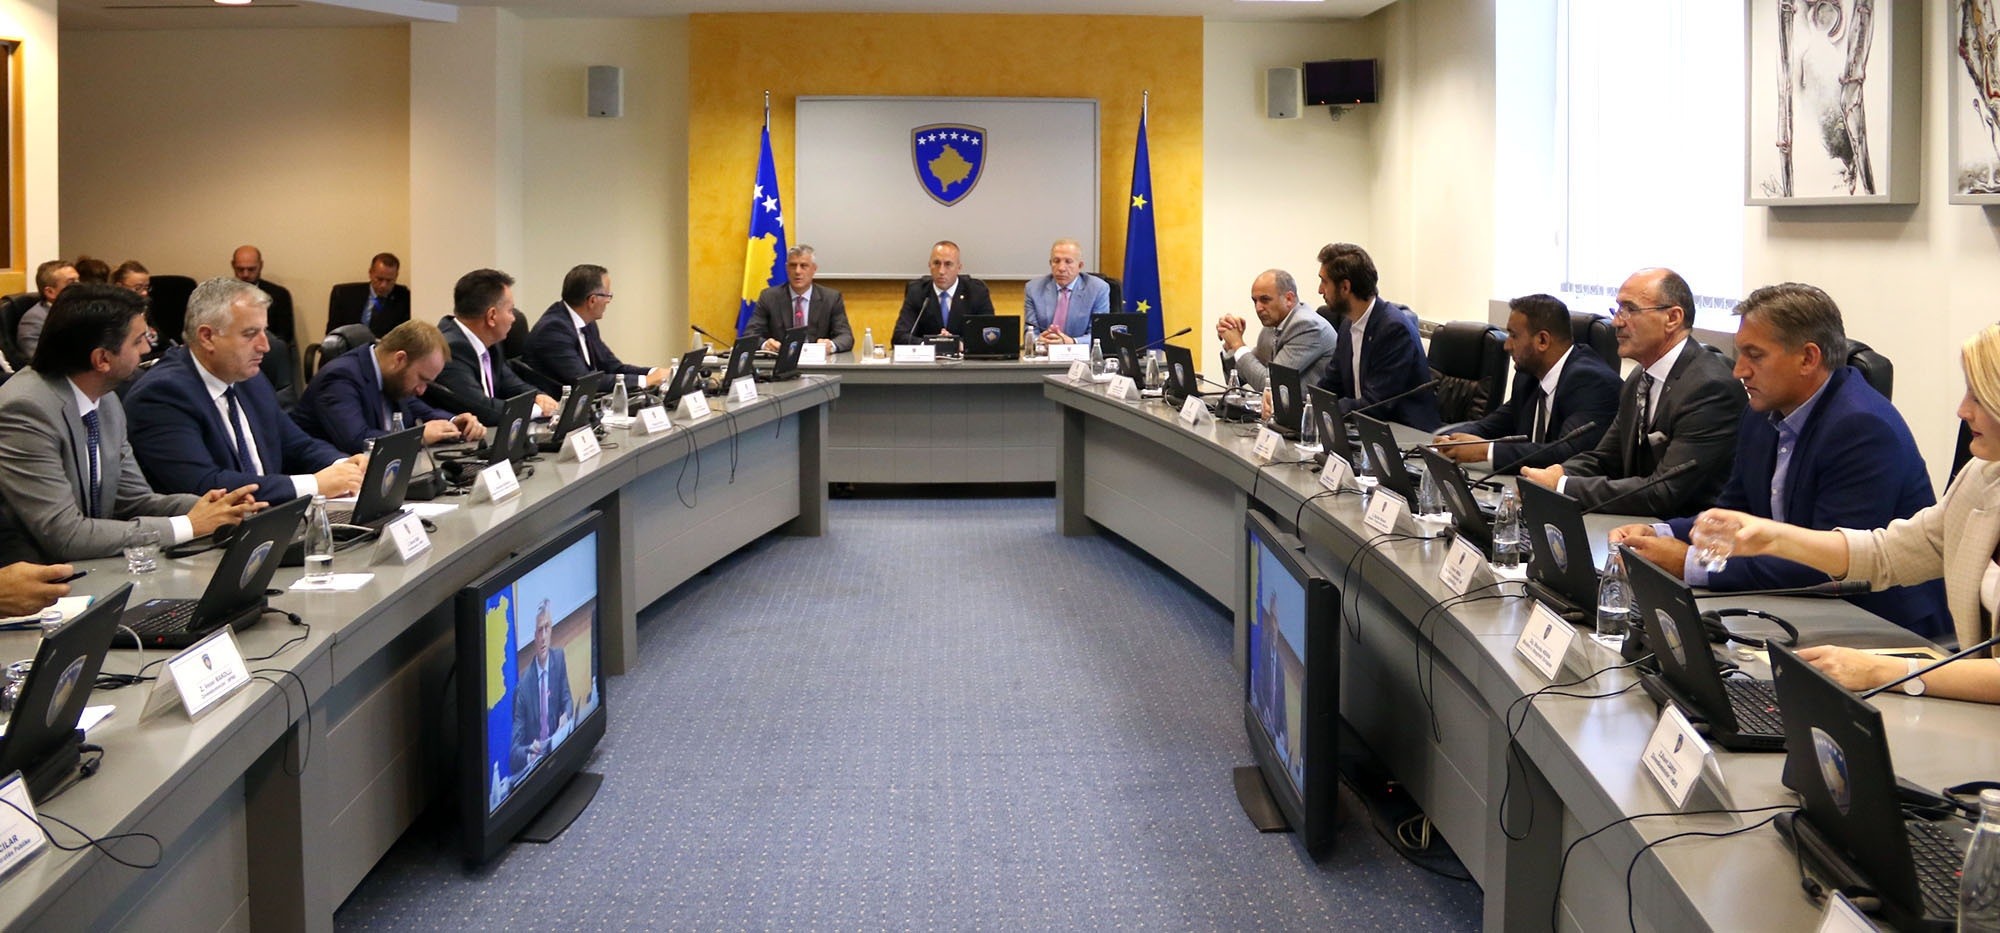 Presidenti Thaçi informon kabinetin qeveritar për procesin e dialogut